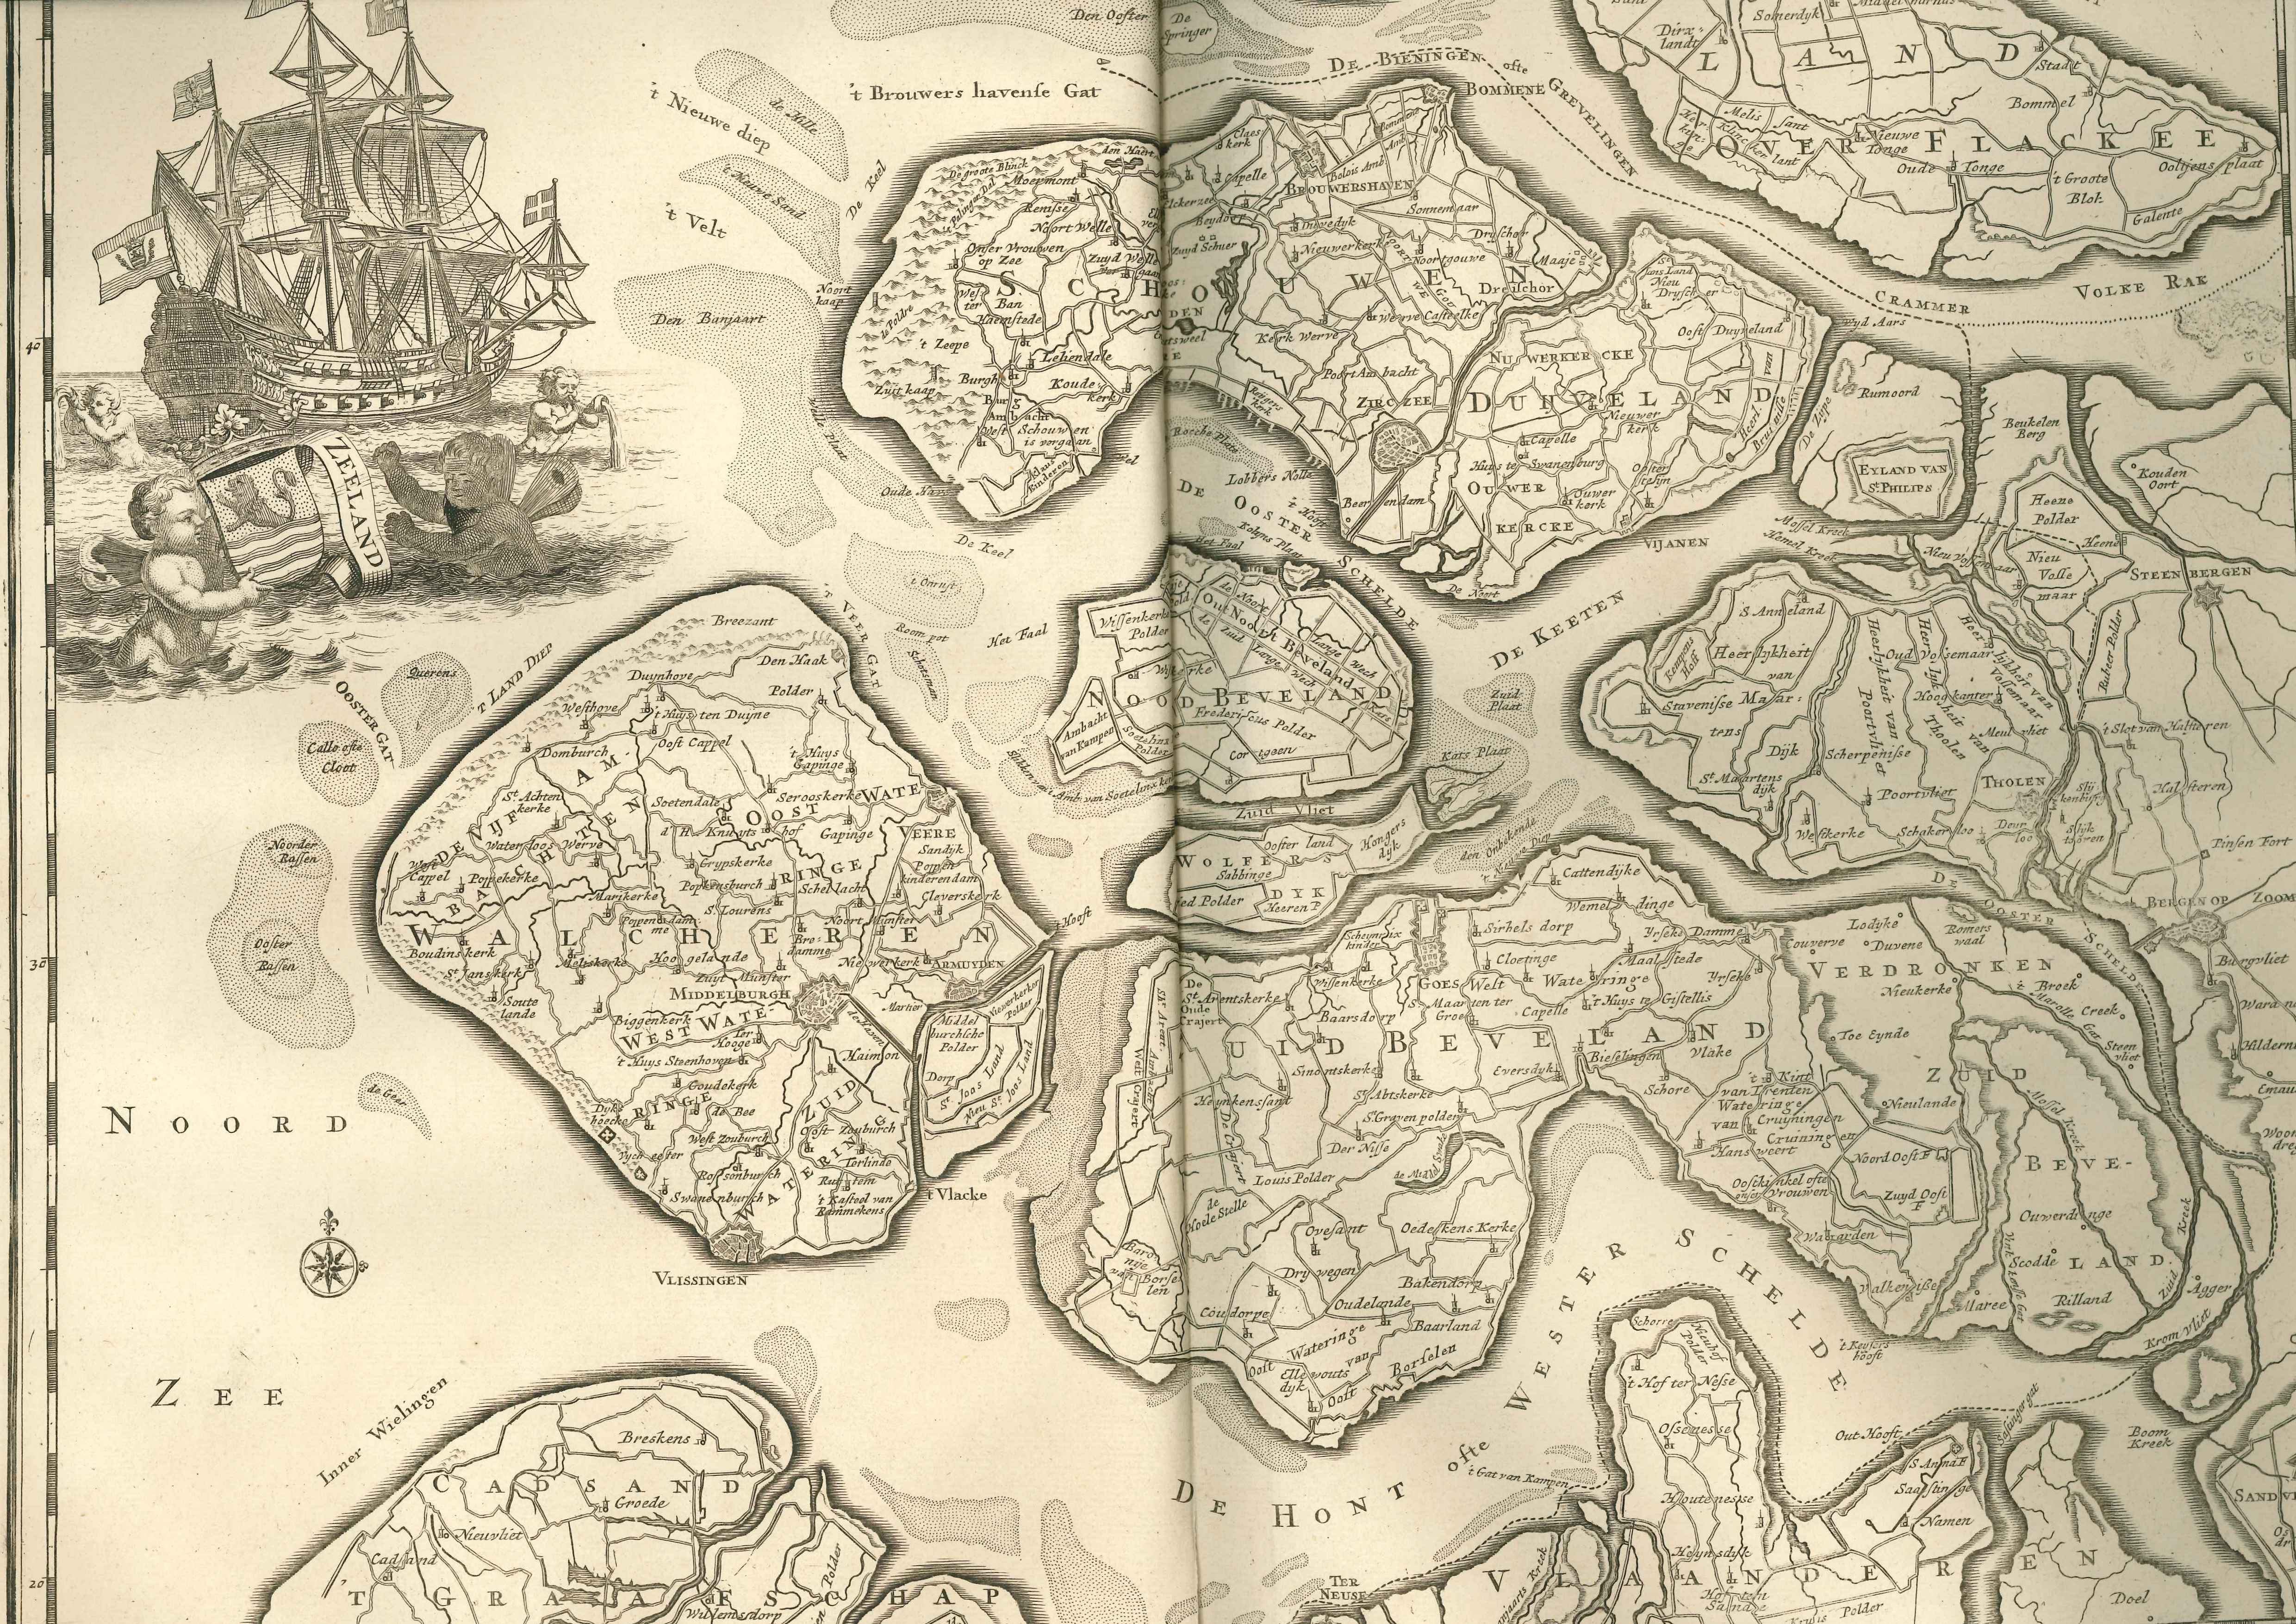 Kaart van het gewest Zeeland, onbekende atlas, ca. 1700.